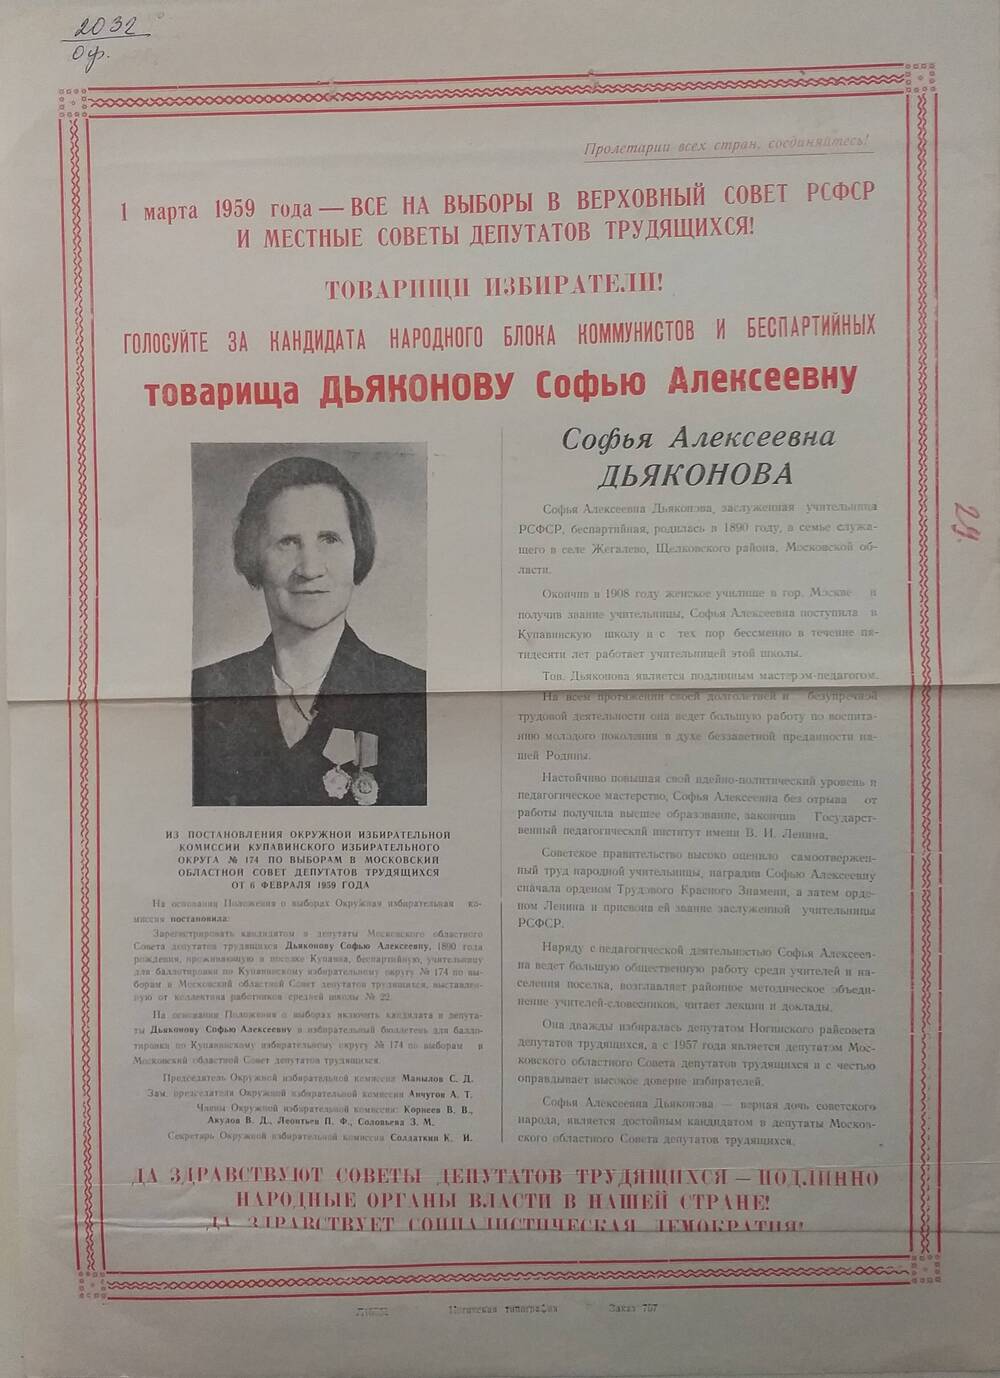 Плакат Призыв к голосования на выборах 1 марта 1959 года за товарища Дьяконову Софью Алексеевну - учительницу Купавинской школы, январь 1959 года.